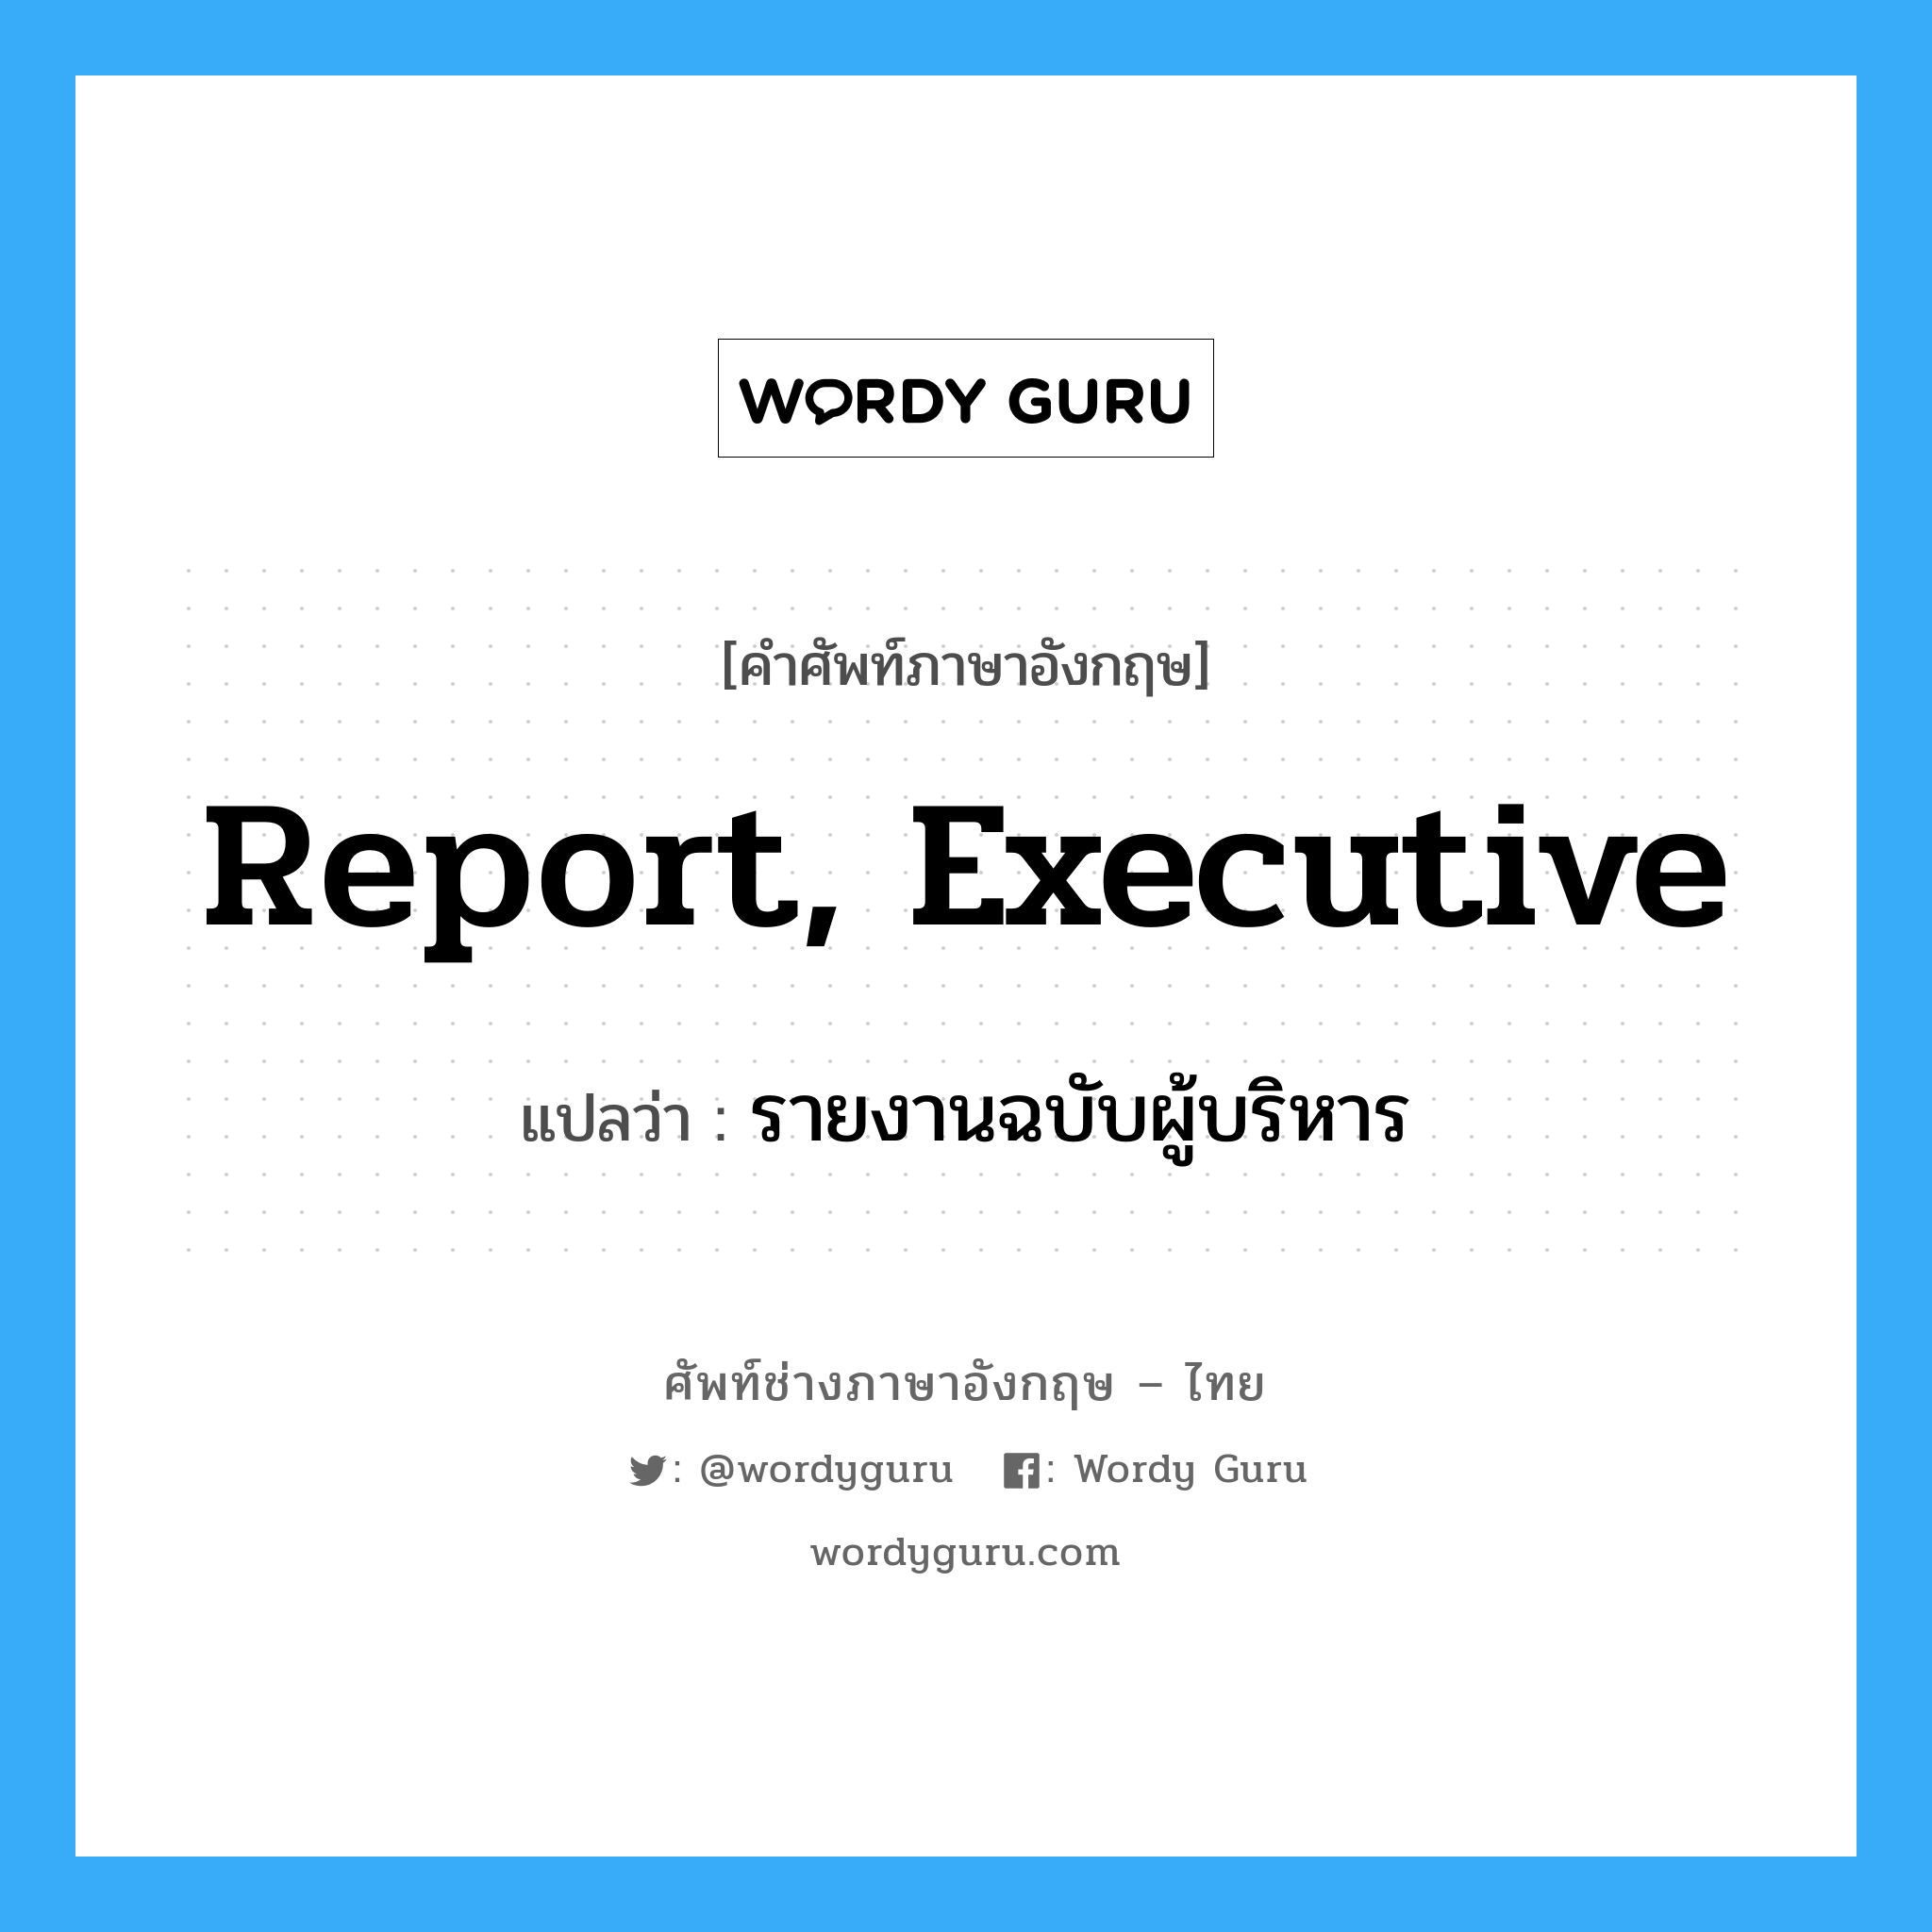 report, executive แปลว่า?, คำศัพท์ช่างภาษาอังกฤษ - ไทย report, executive คำศัพท์ภาษาอังกฤษ report, executive แปลว่า รายงานฉบับผู้บริหาร